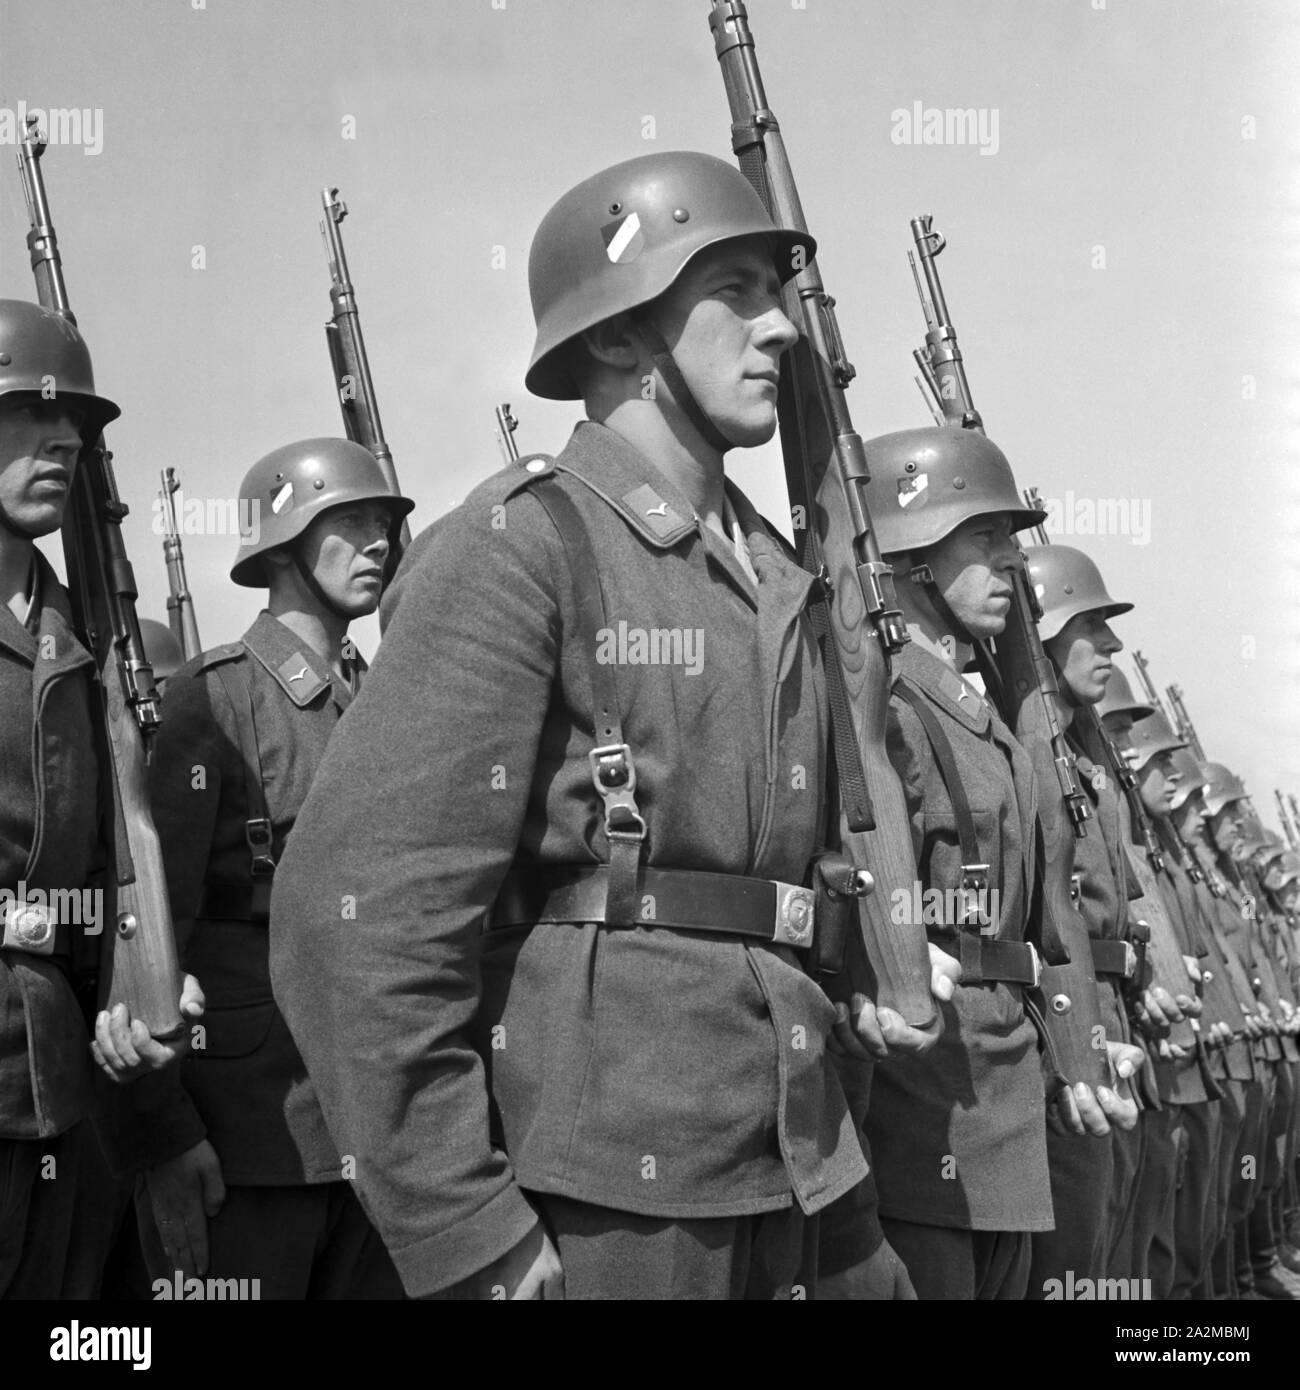 Soldaten des Luftnachrichtenregiments, Deutschland 1940. Soldaten einer Signal Corps Regiment, Gerrmany 1940. Stockfoto